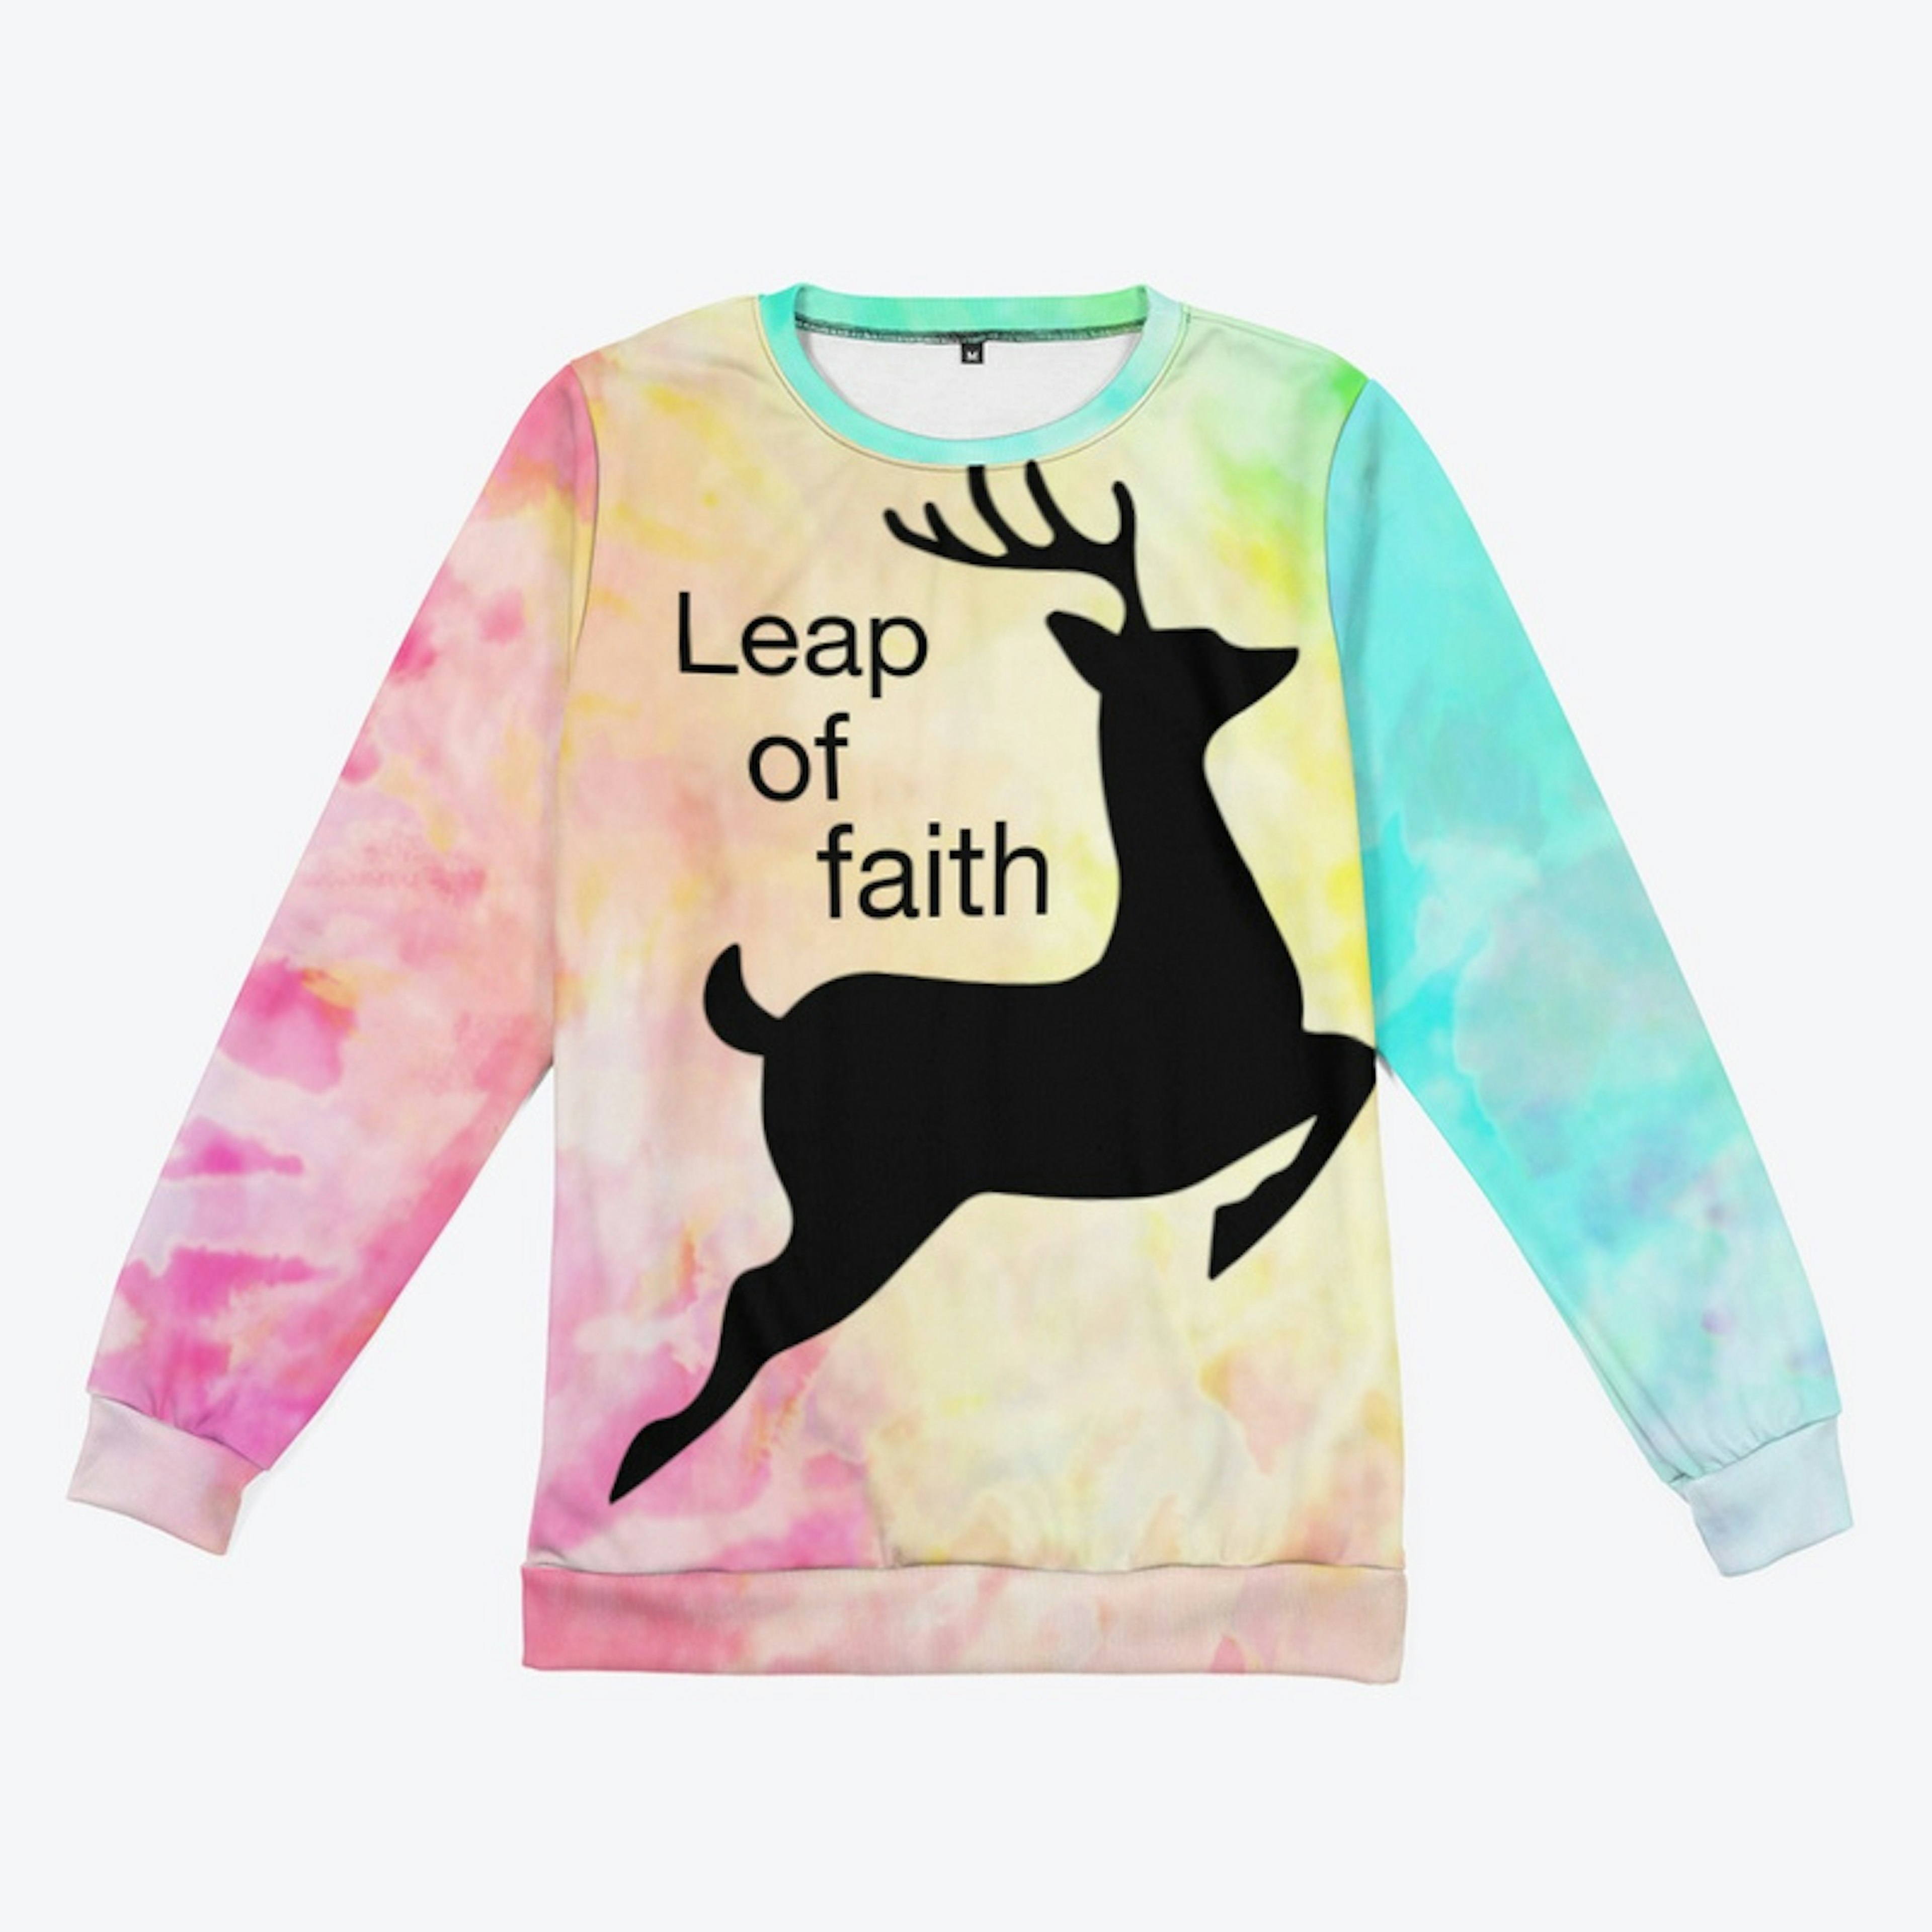 Leap Of Faith Tie Dye